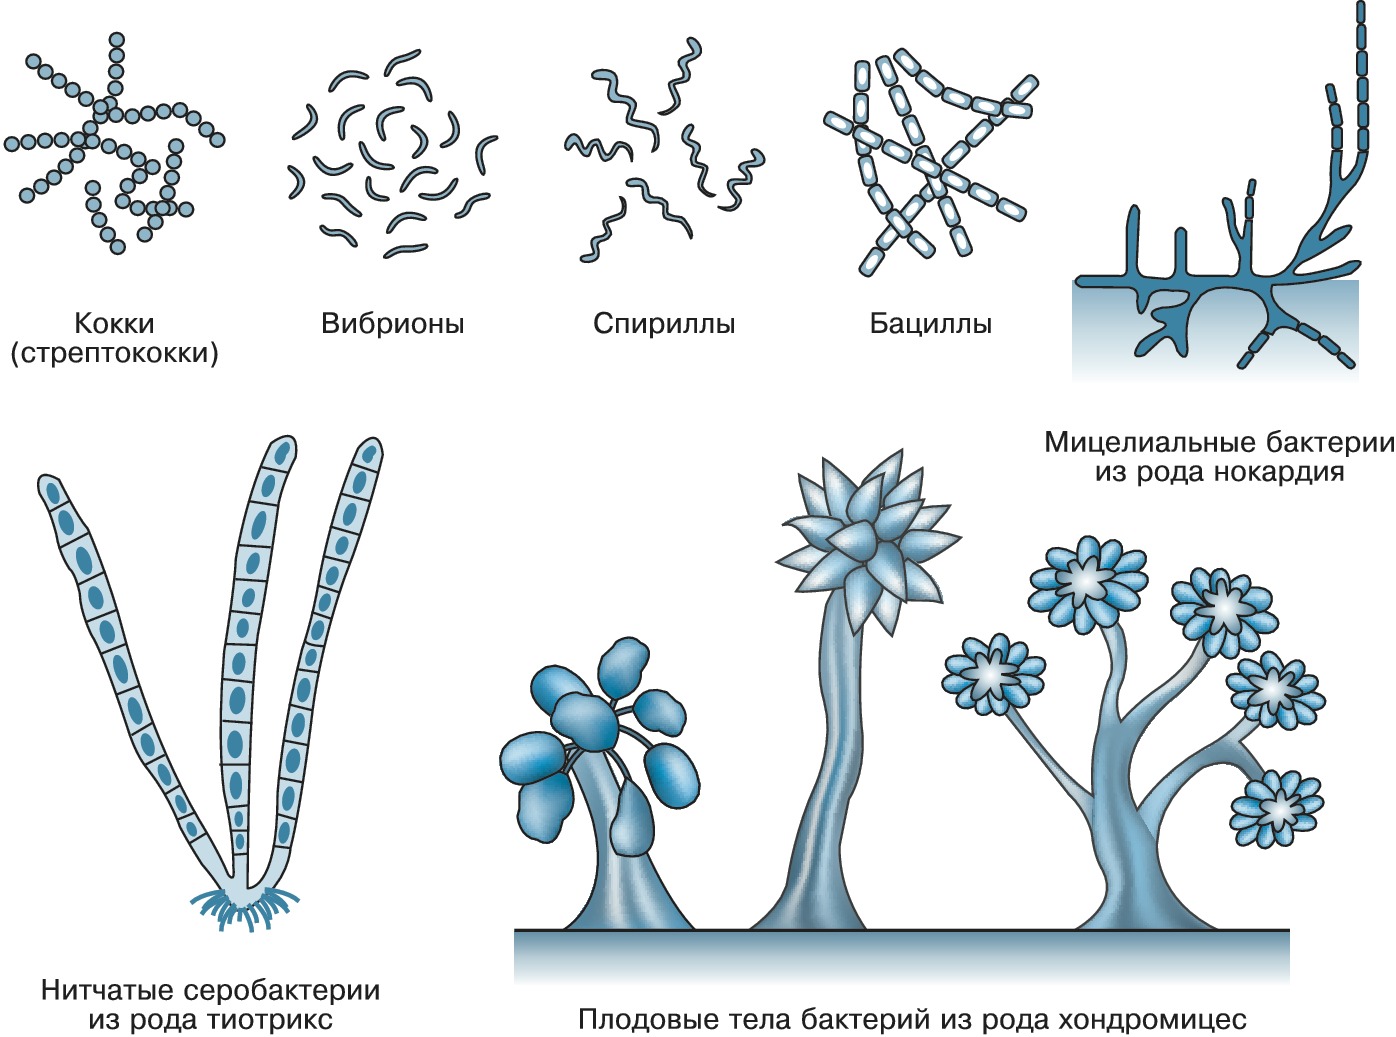 Бактерии изогнутой формы носят название. Формы бактерий картинки. Формы клеток микробиология. Отметь форму бактерии — кокки.. Бактерии разновидности названия.